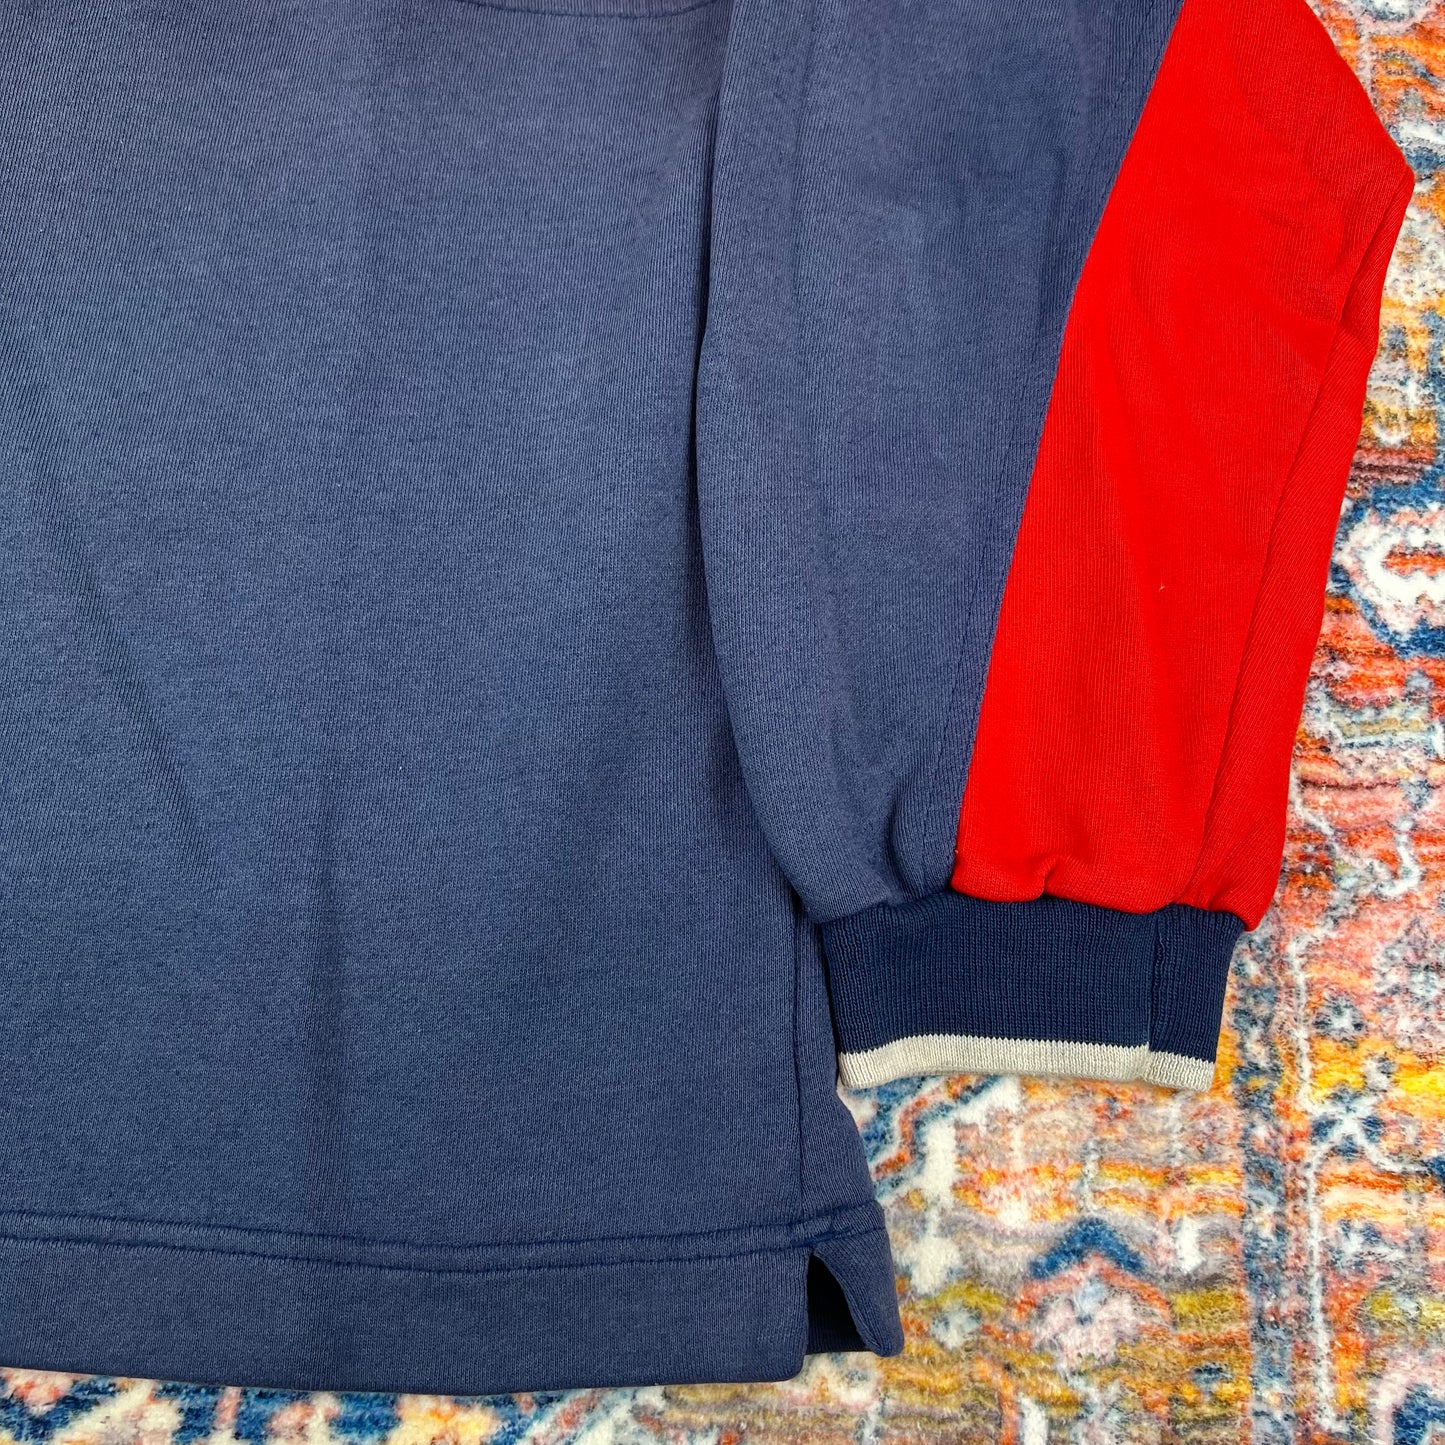 Vintage Nike 1/4 Zip Sweatshirt (M)